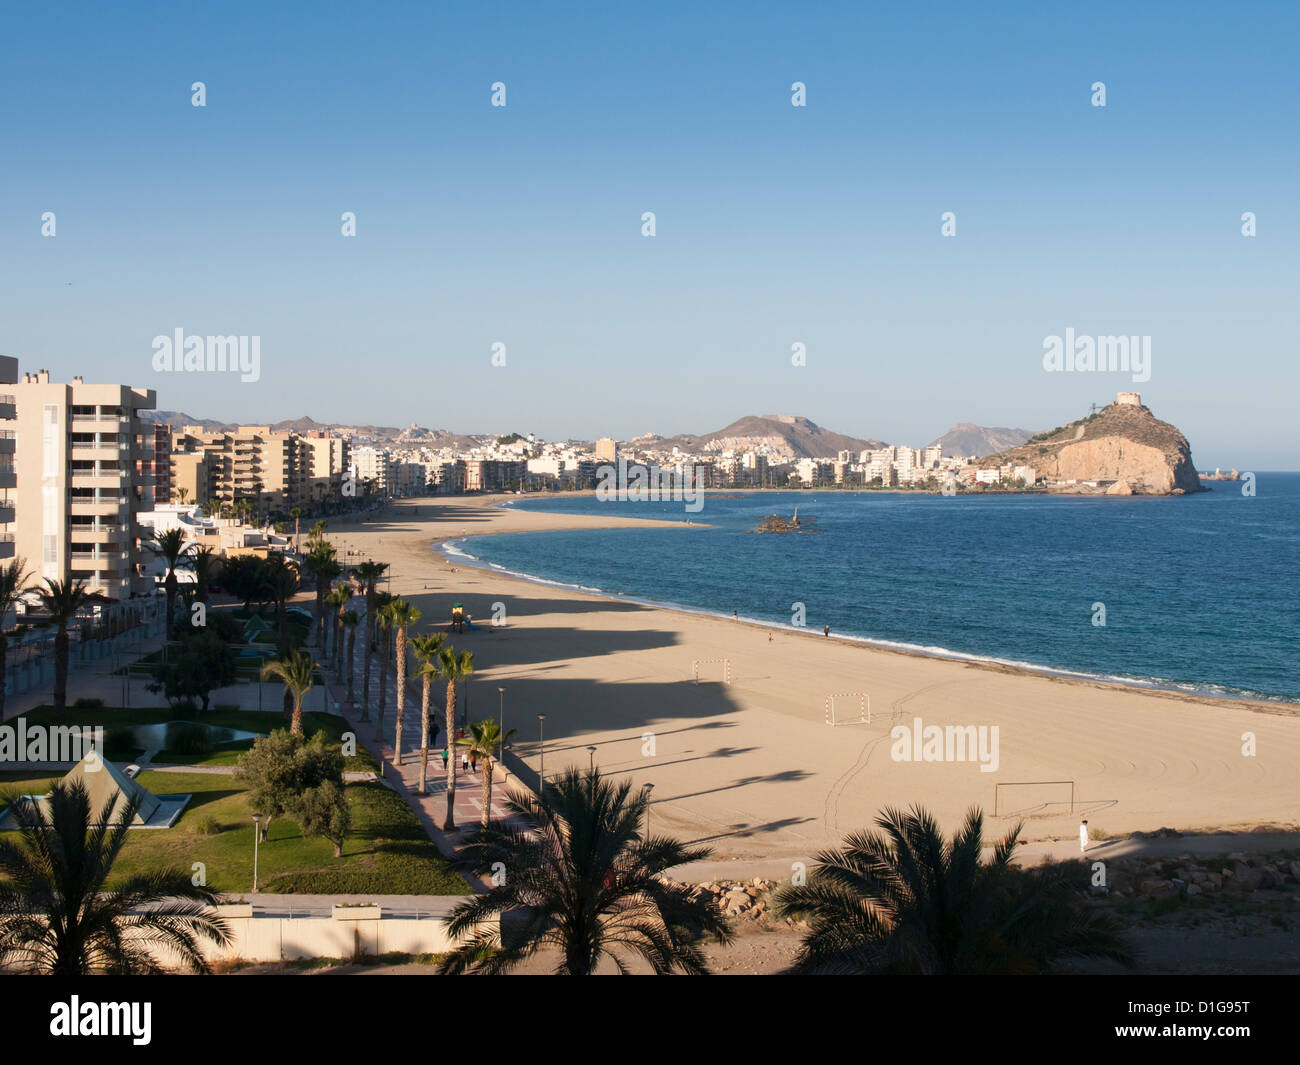 beach at Aguilas, Murcia Spain Stock Photo